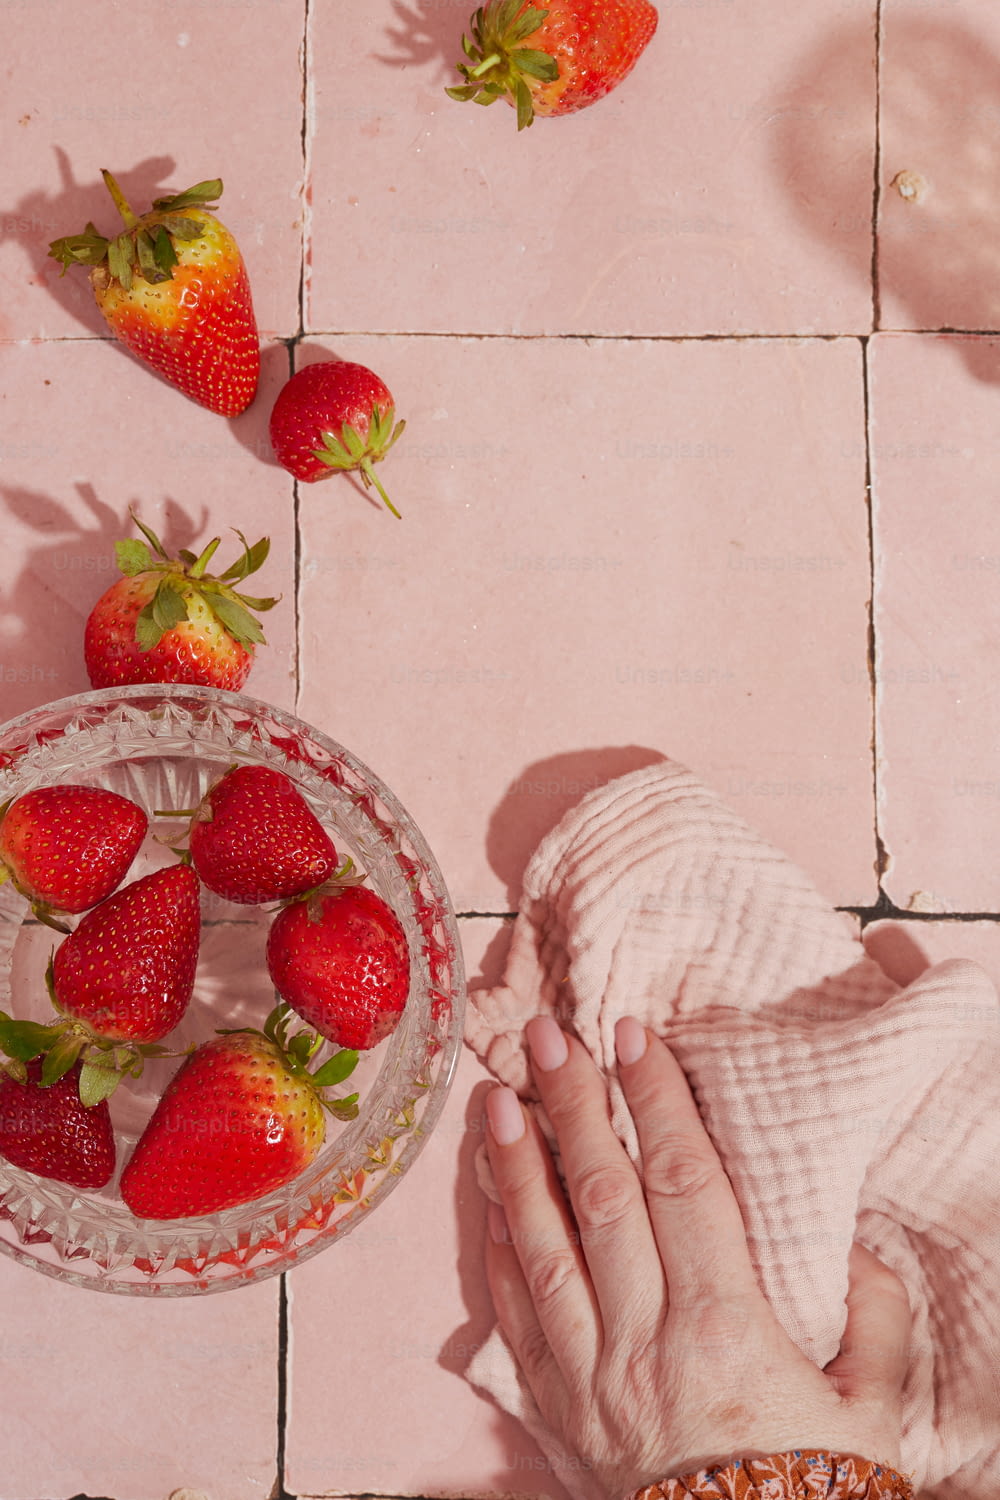 eine Schüssel Erdbeeren und eine Schüssel Erdbeeren auf einem rosa Fliesenboden